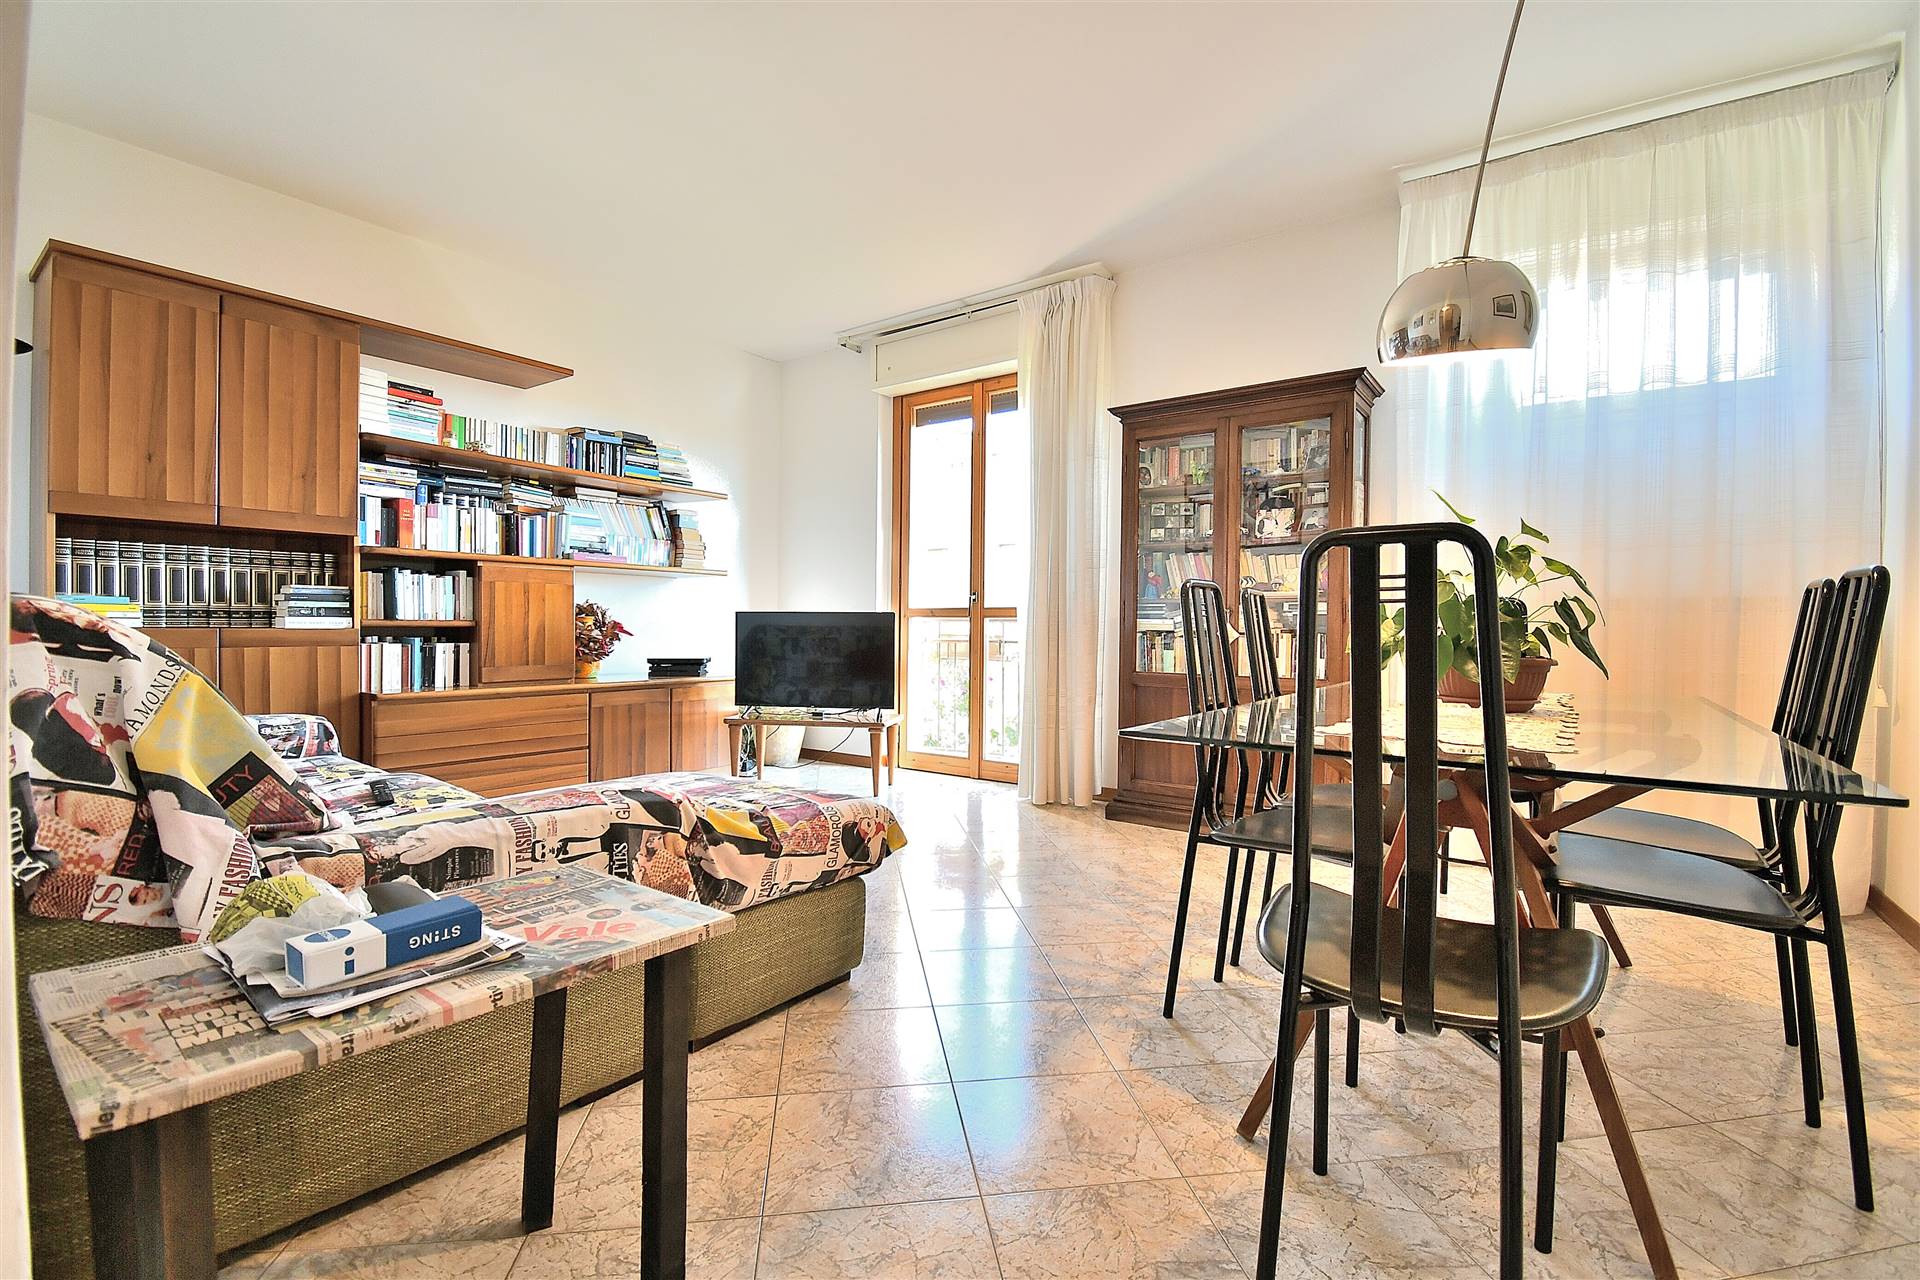 Petriccio-Belriguardo, in piacevole contesto residenziale a schiera, proponiamo appartamento di mq. 110 netti all'interno di una bella palazzina in 